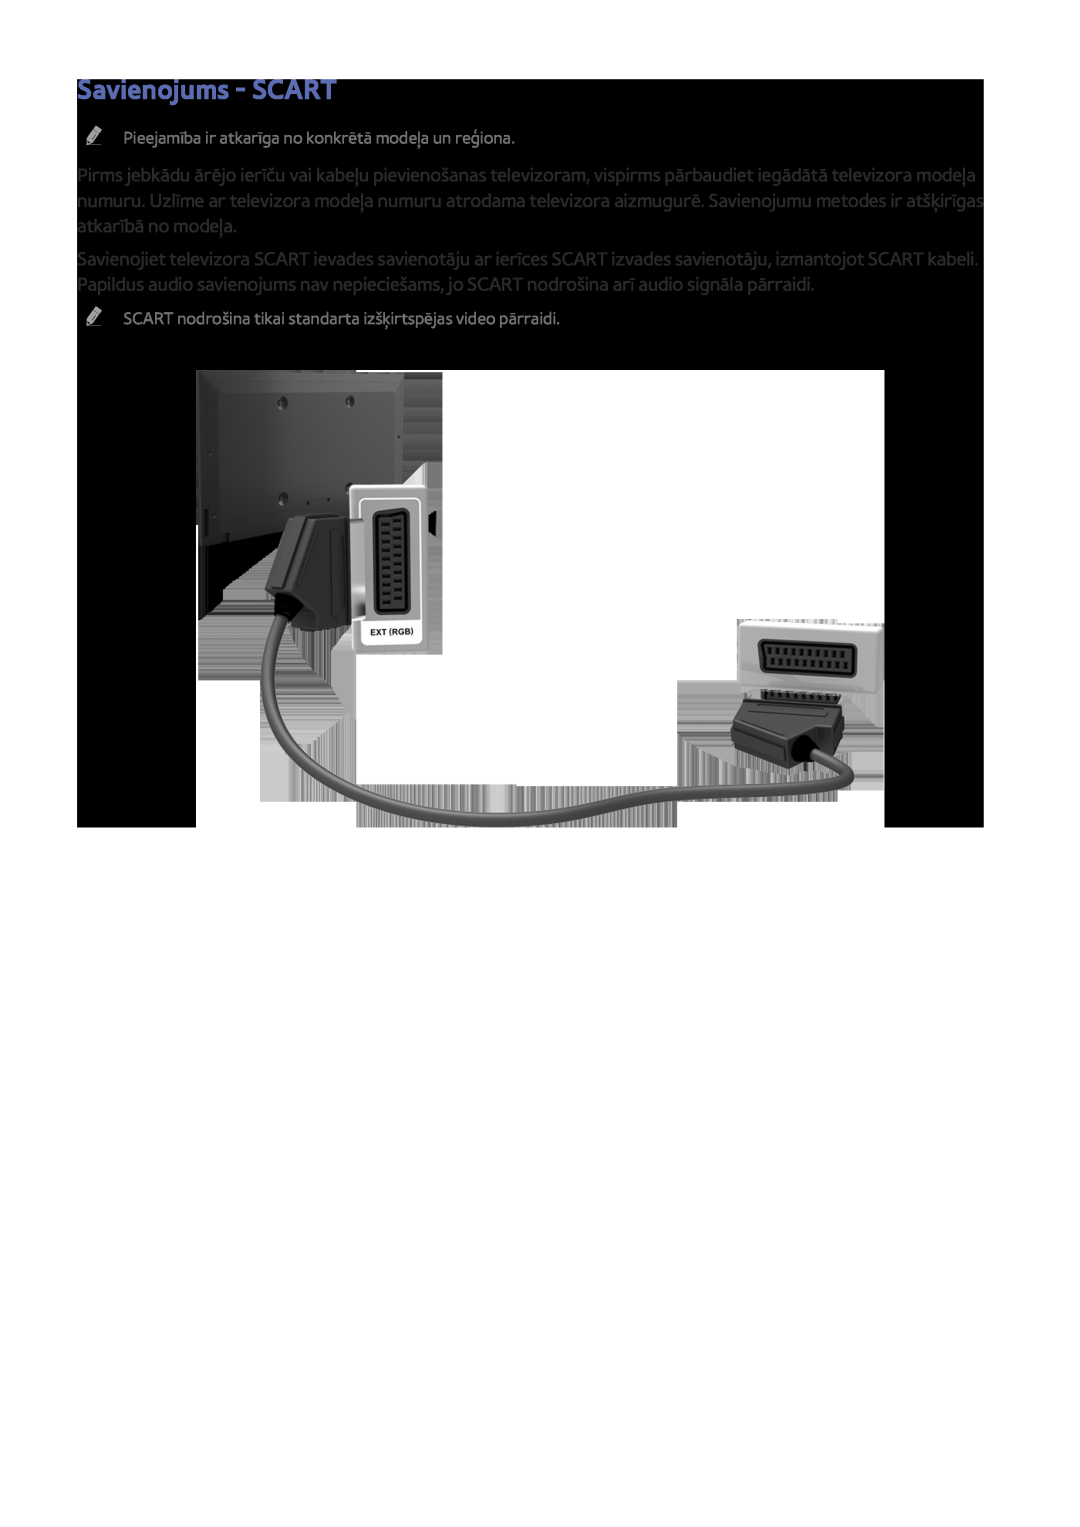 Samsung UE32J5250ASXZG, UE40J5250SSXZG manual Savienojums - SCART, Pieejamība ir atkarīga no konkrētā modeļa un reģiona 